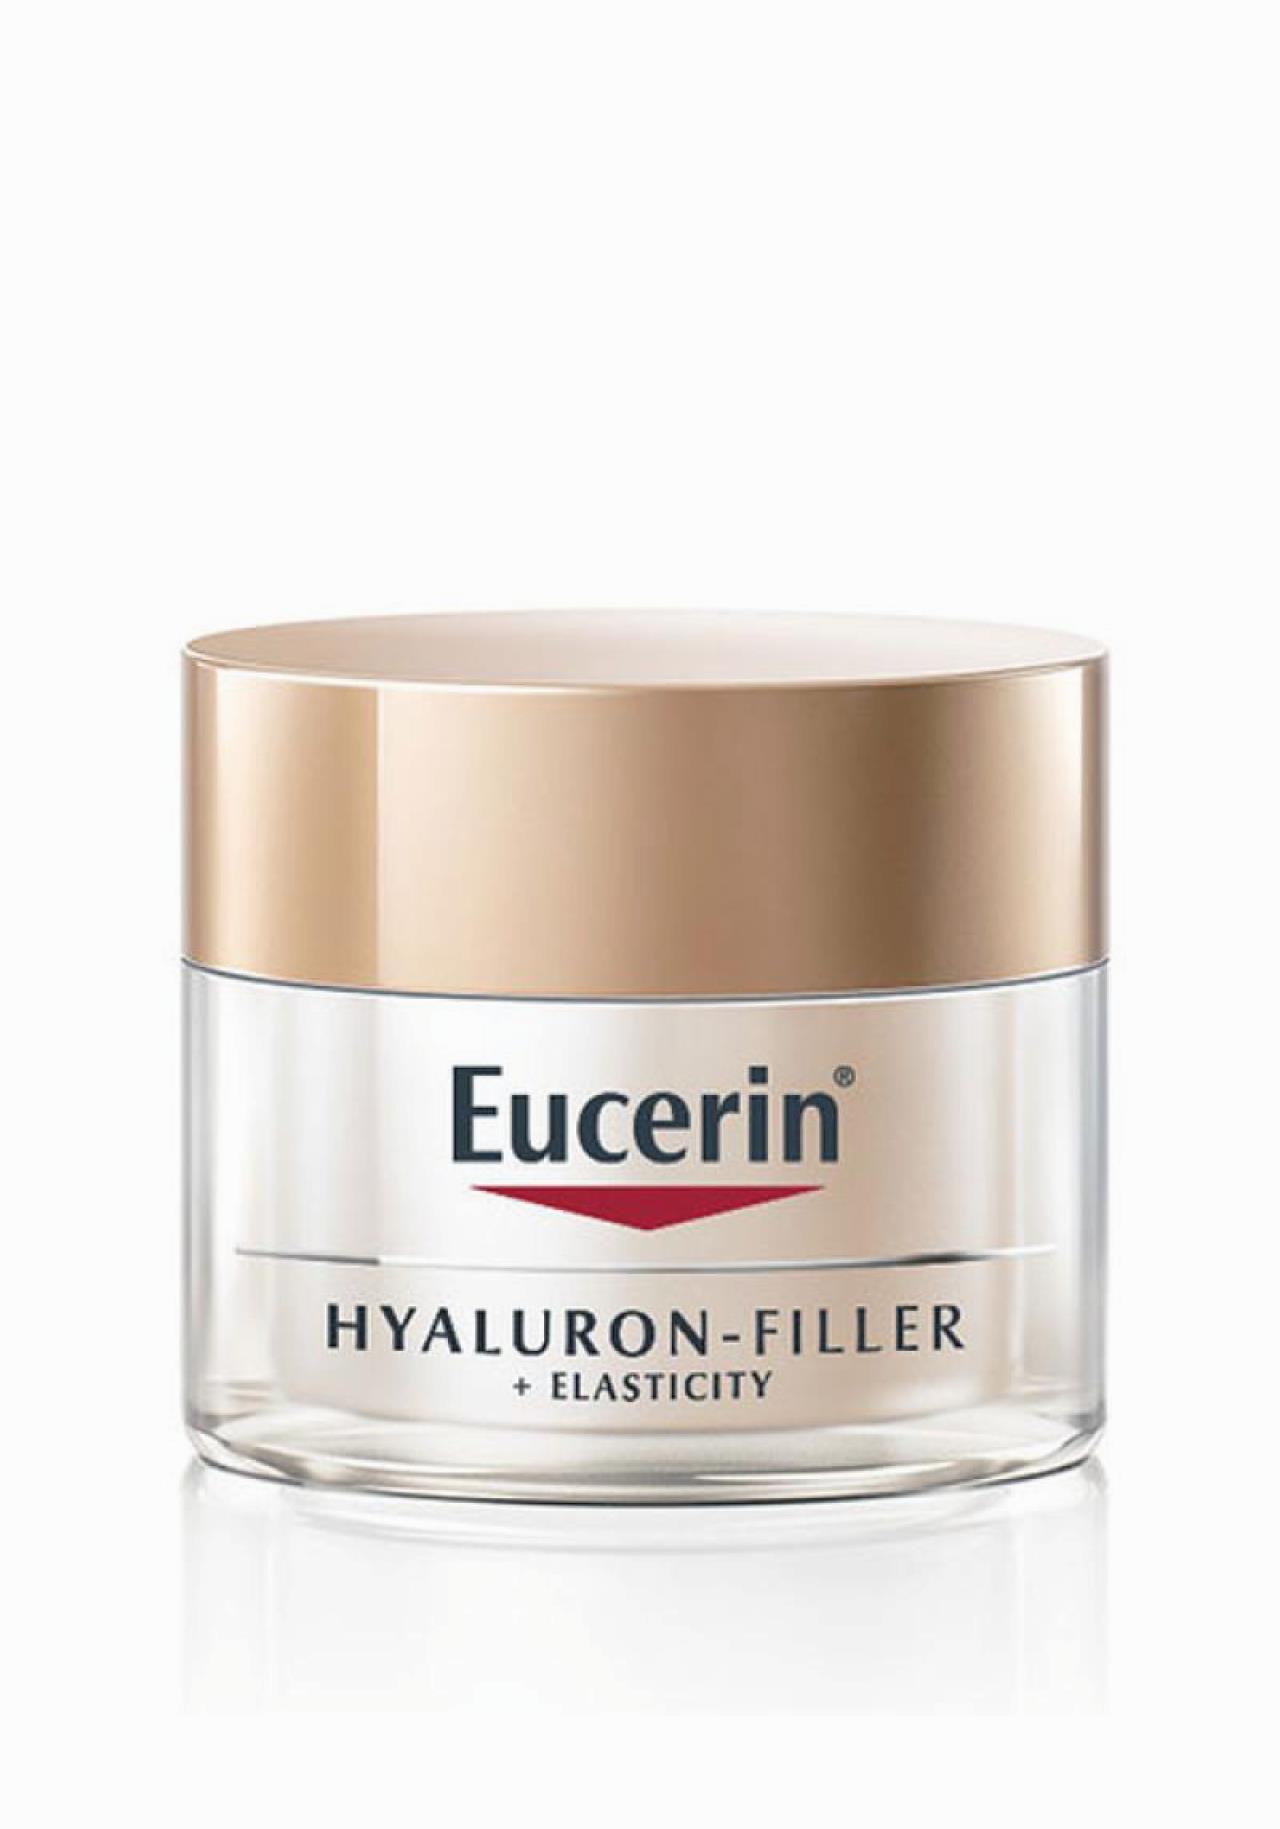 Crema antiedad Eucerin Hyaluron Filler +Elasticity Las mejores cremas para mujeres de 50 años y más 2019